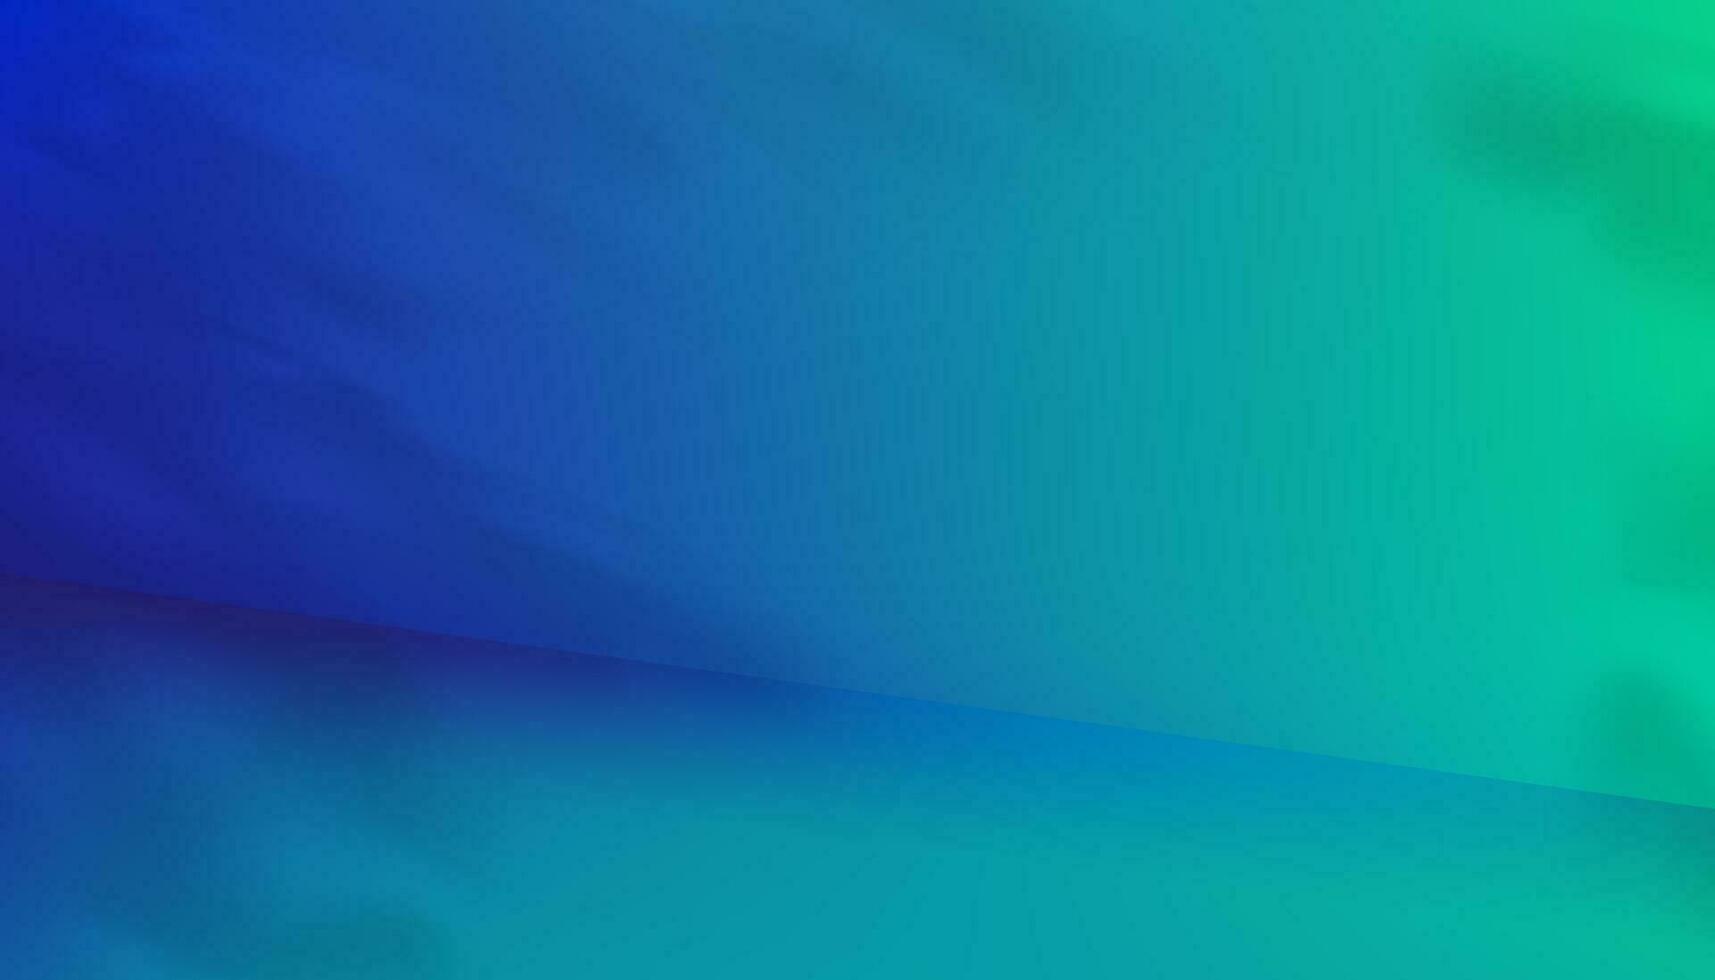 estúdio plano de fundo, produto exibição pódio com sombra folhas em azul esverdeado parede superfície.vetor pano de fundo bandeira cena futurista néon para futuro ciberespaço, publicidade, tecnologia, cosméticos, moda, ficção científica vetor